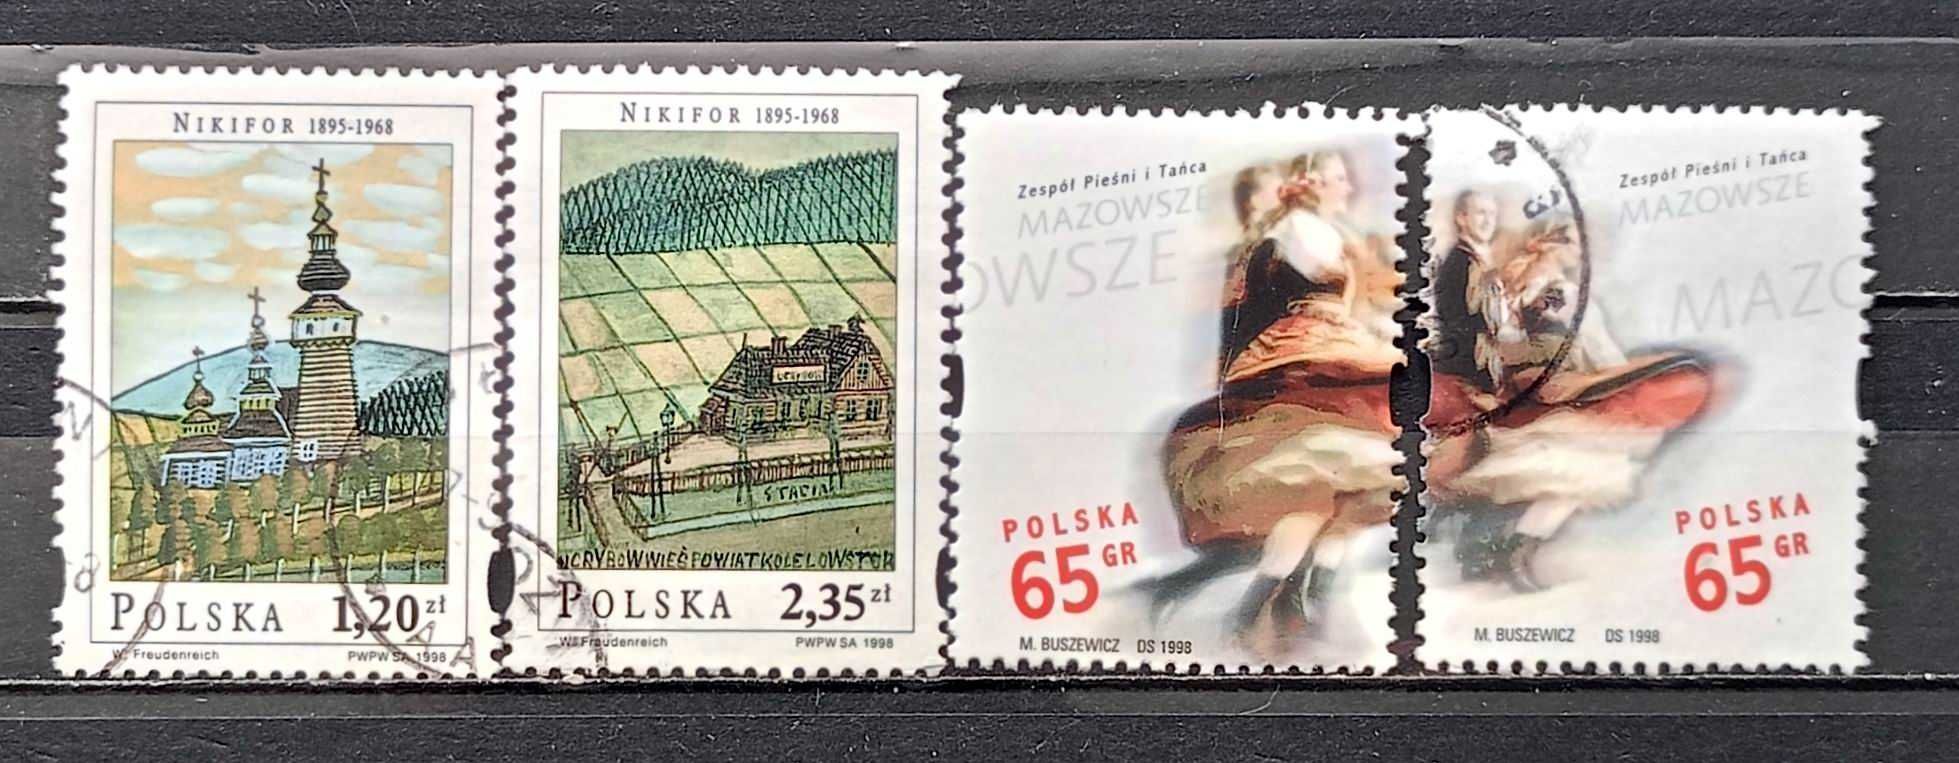 L Znaczki polskie rok 1998 - III kwartał